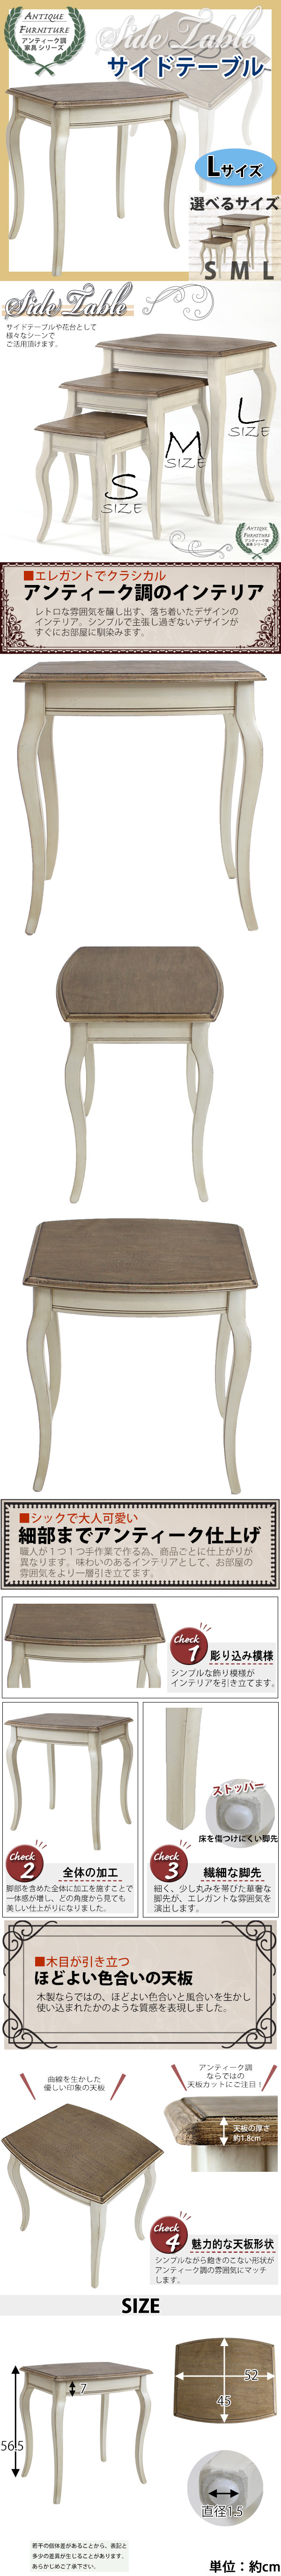 日本初売アンティーク調 サイドテーブル Lサイズ 木製 白 花台 テーブル サイドテーブル